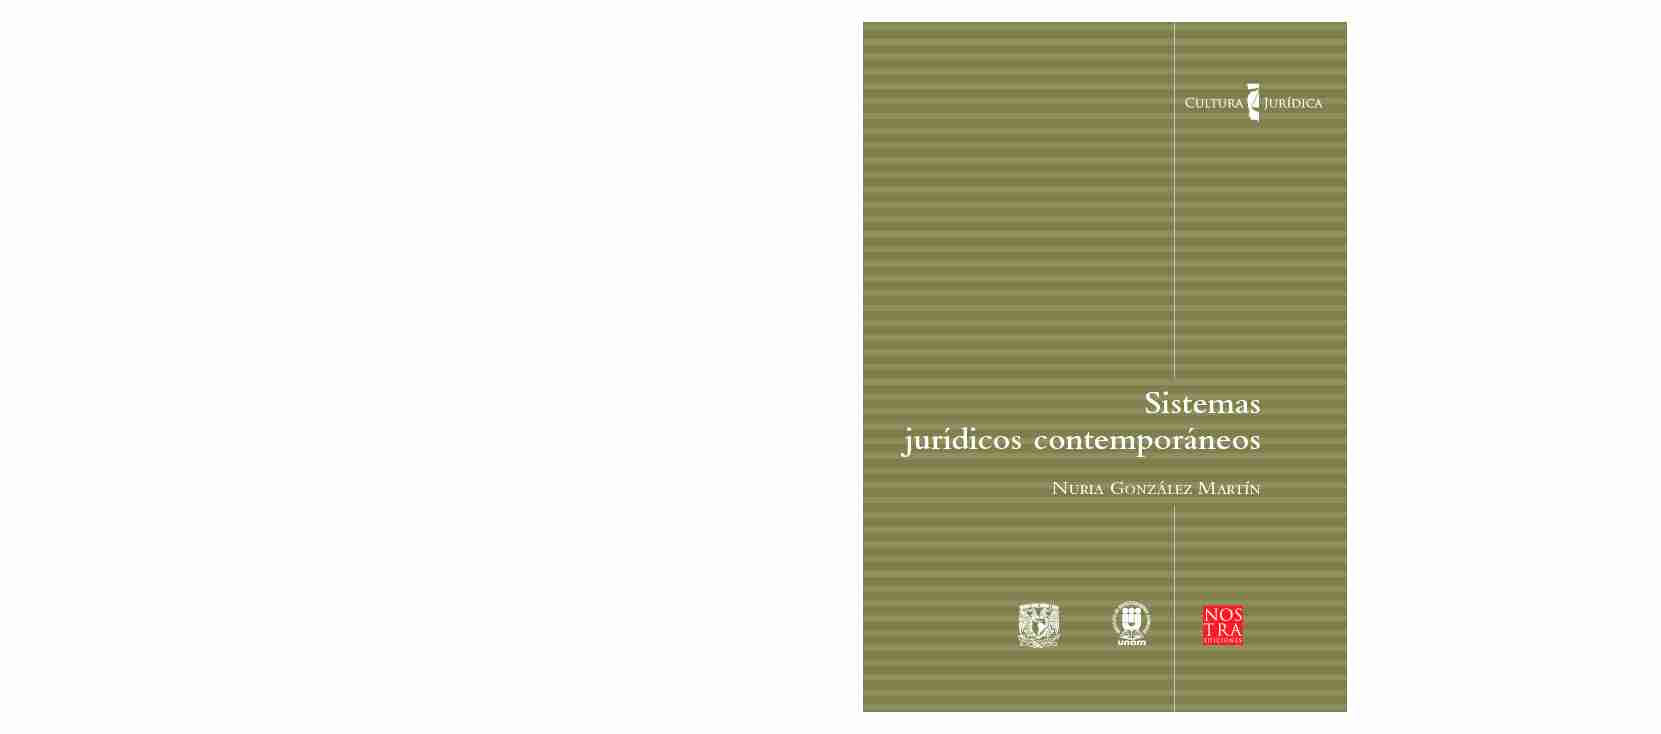 [PDF] Sistemas jurídicos contemporáneos - UNAM